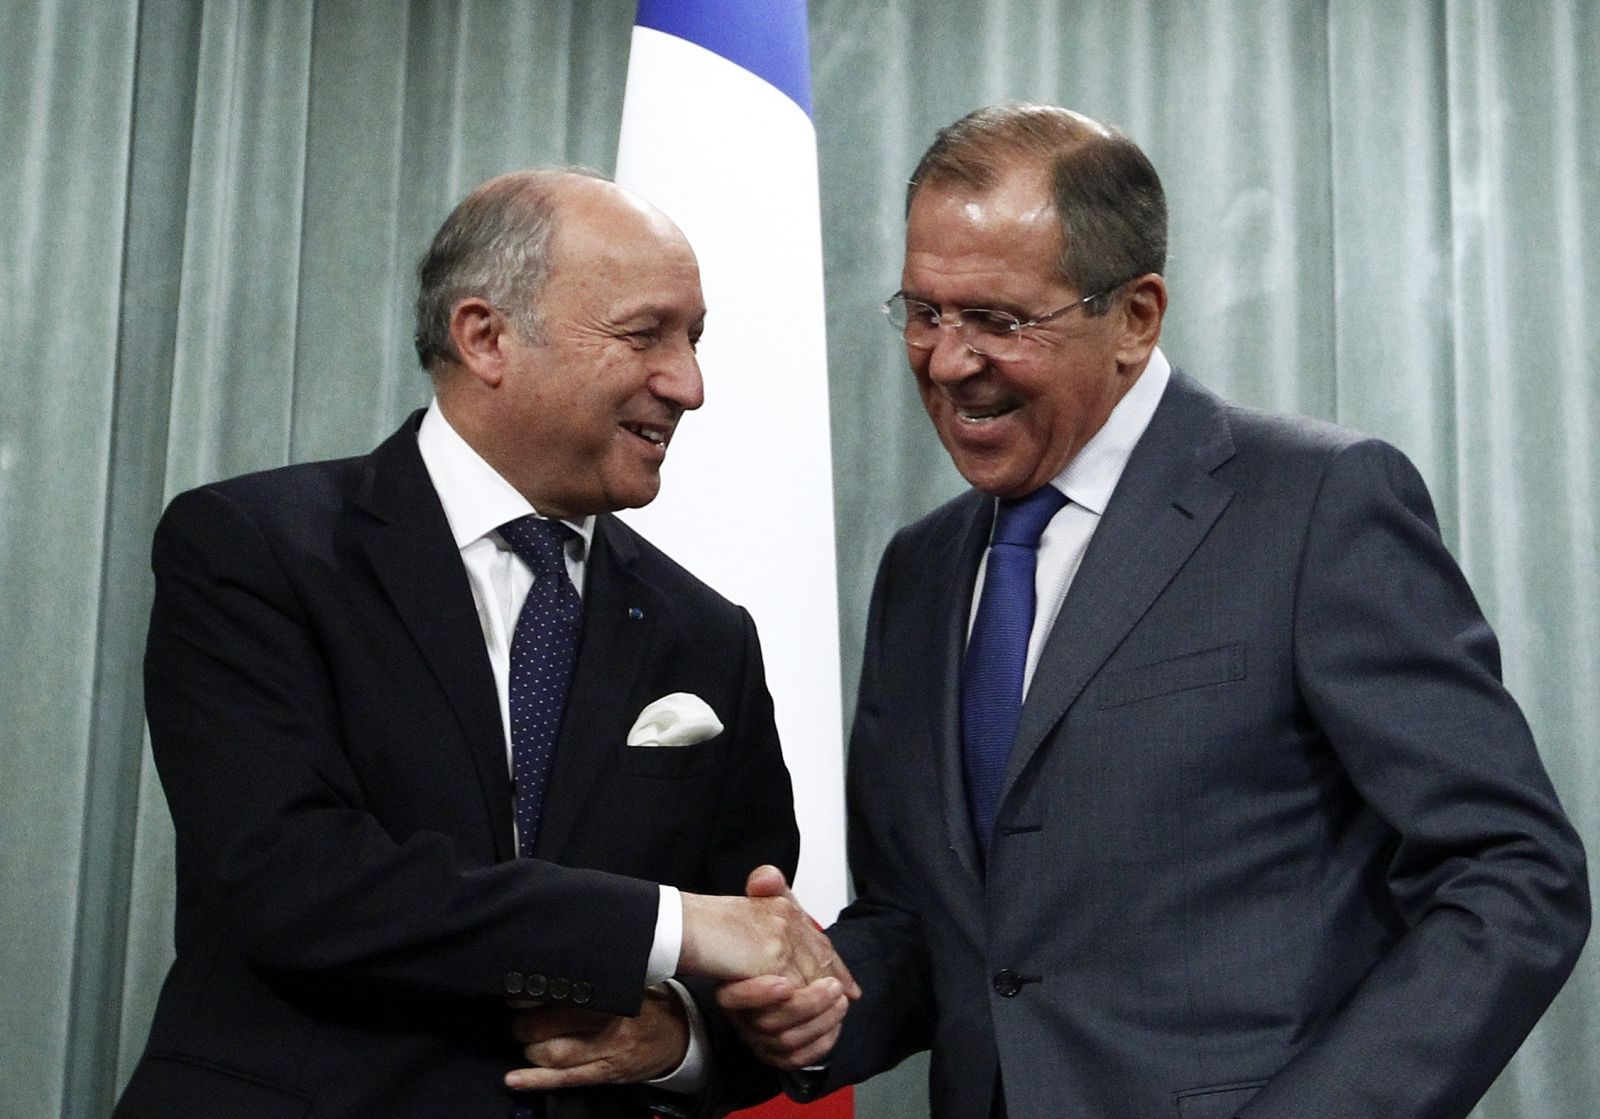 El ministro de exteriores de Francia, Laurent Fabius, junto con su homólogo ruso, Sergei Lavrov, durante su visita a Moscú